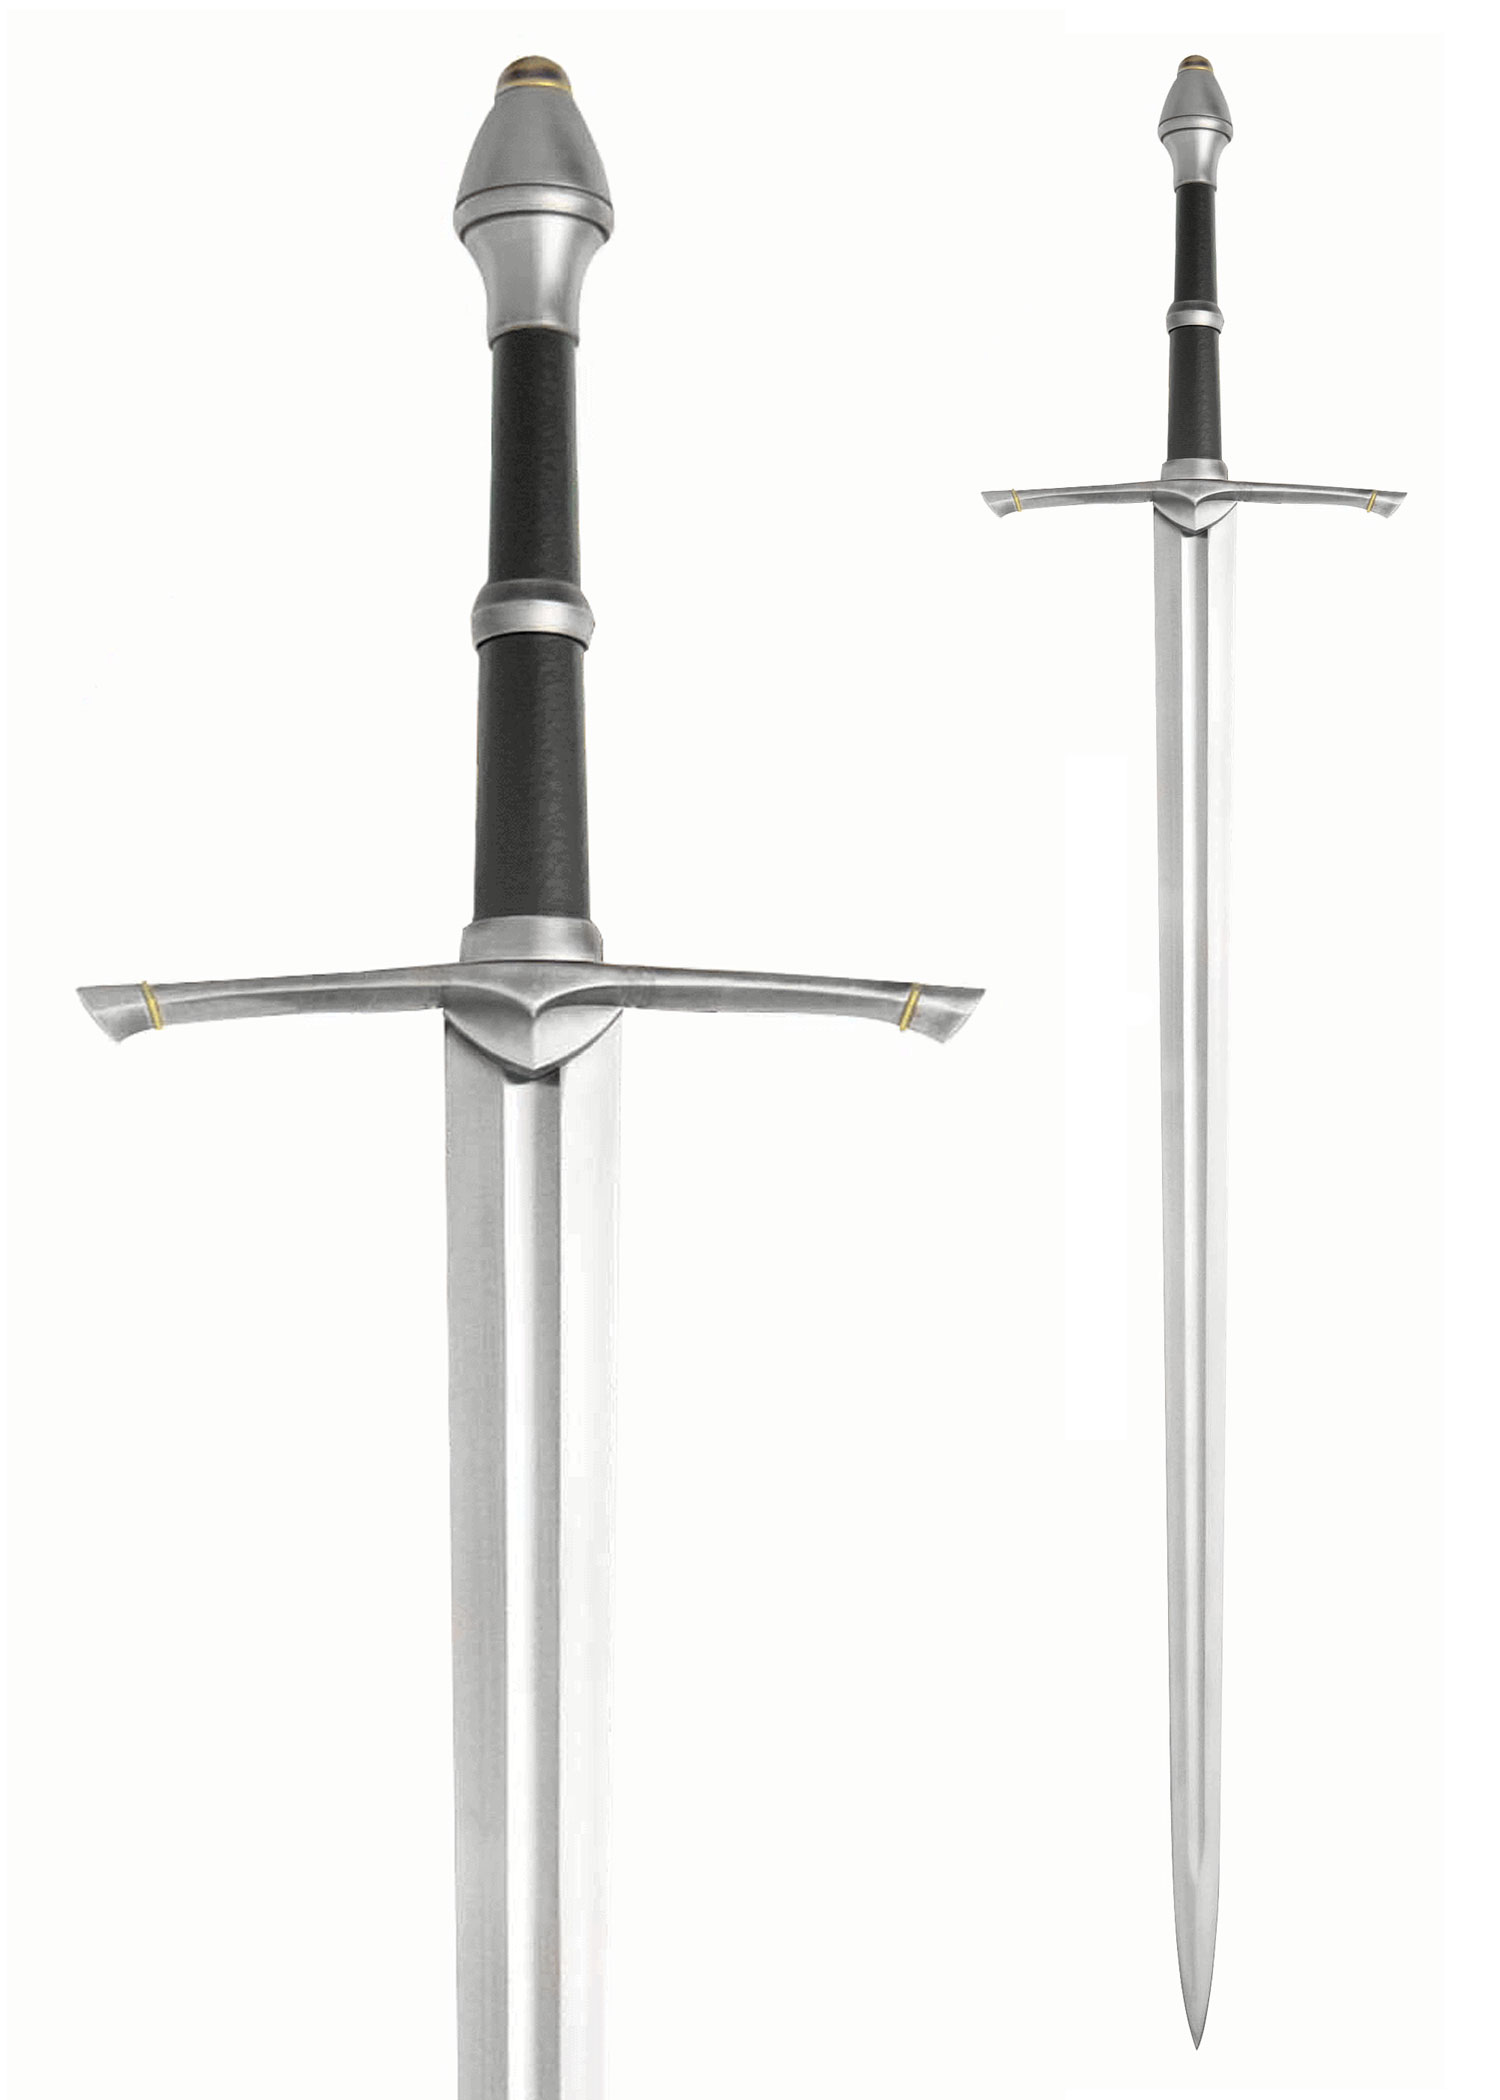 LOTR Lord of the Rings King of Gondor Aragorn Strider Ranger Sword Dagger Blade 